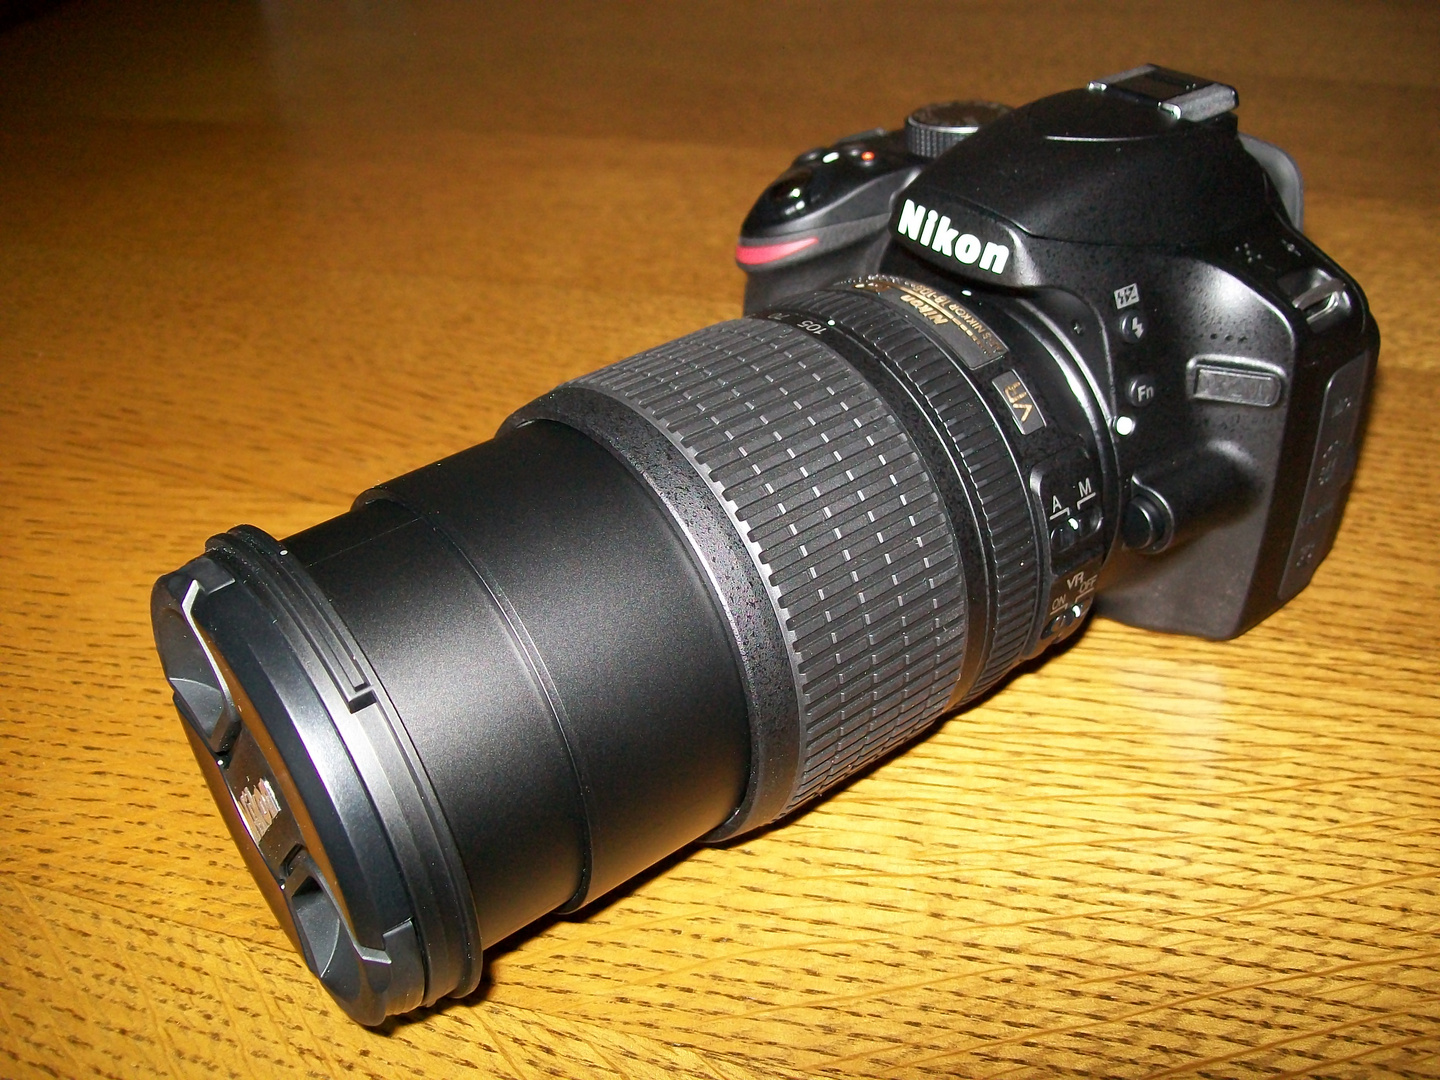 Seit Gestern meine NEUE : Eine Nikon D 3200 ......... FREUDE !